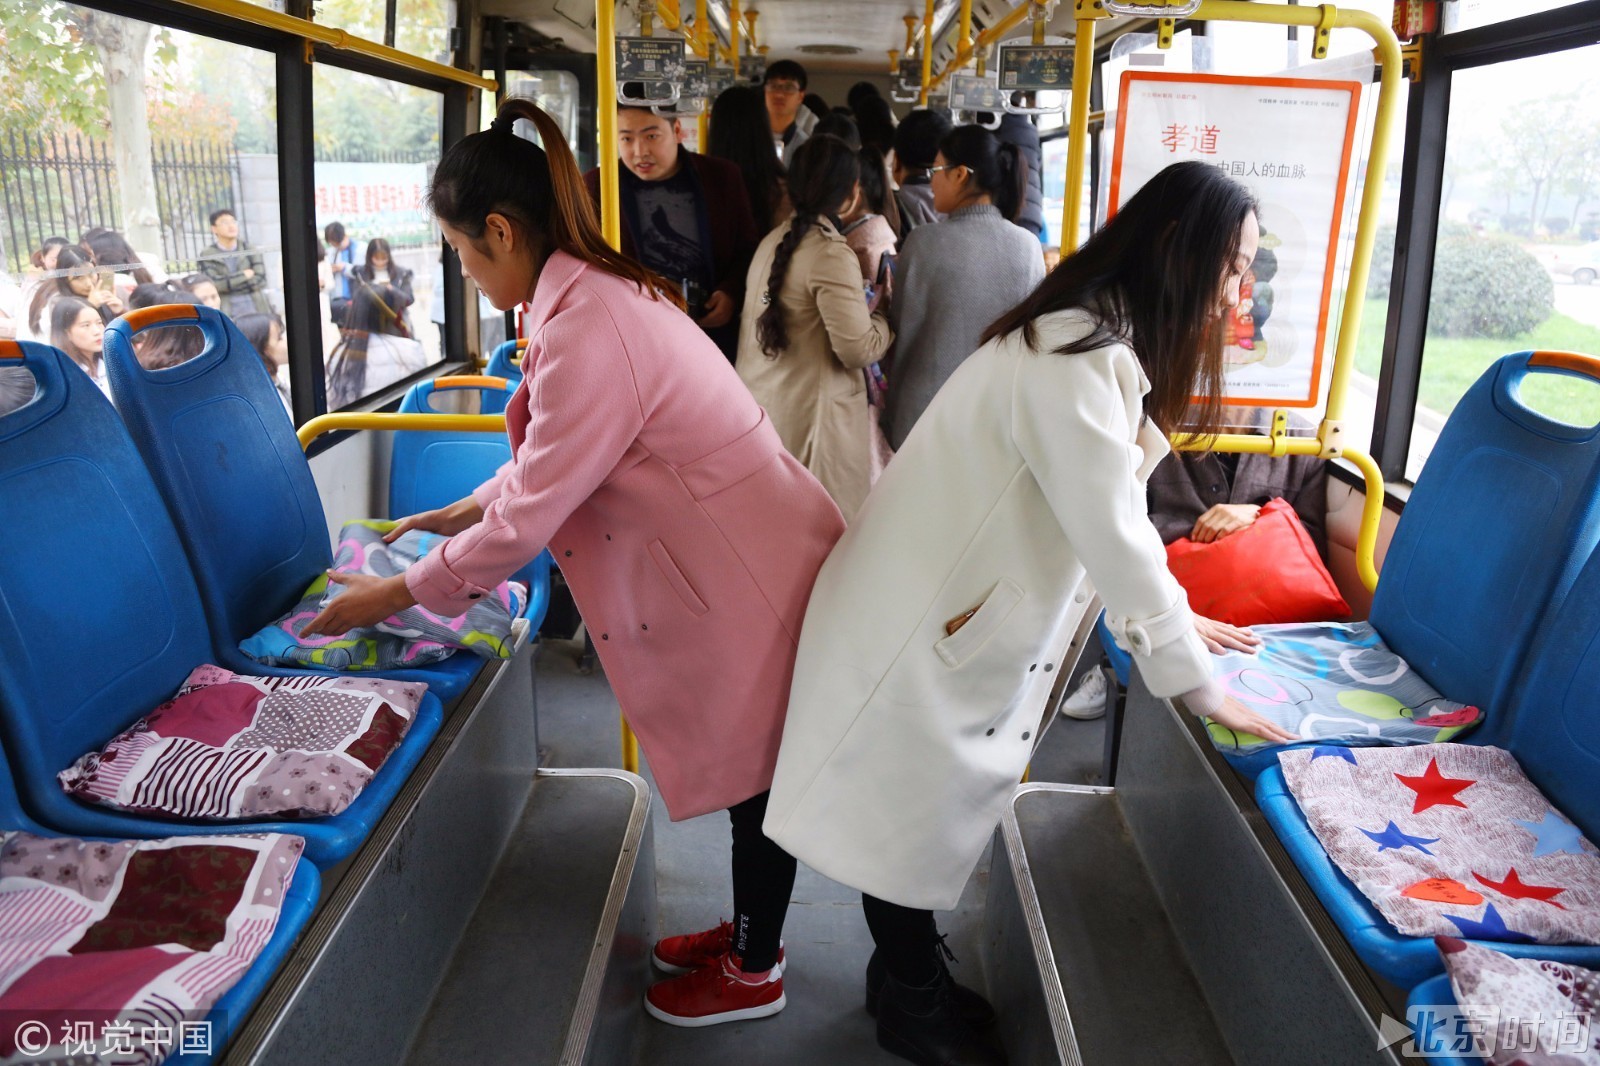 女大学生制作坐垫 免费投放到公交车上